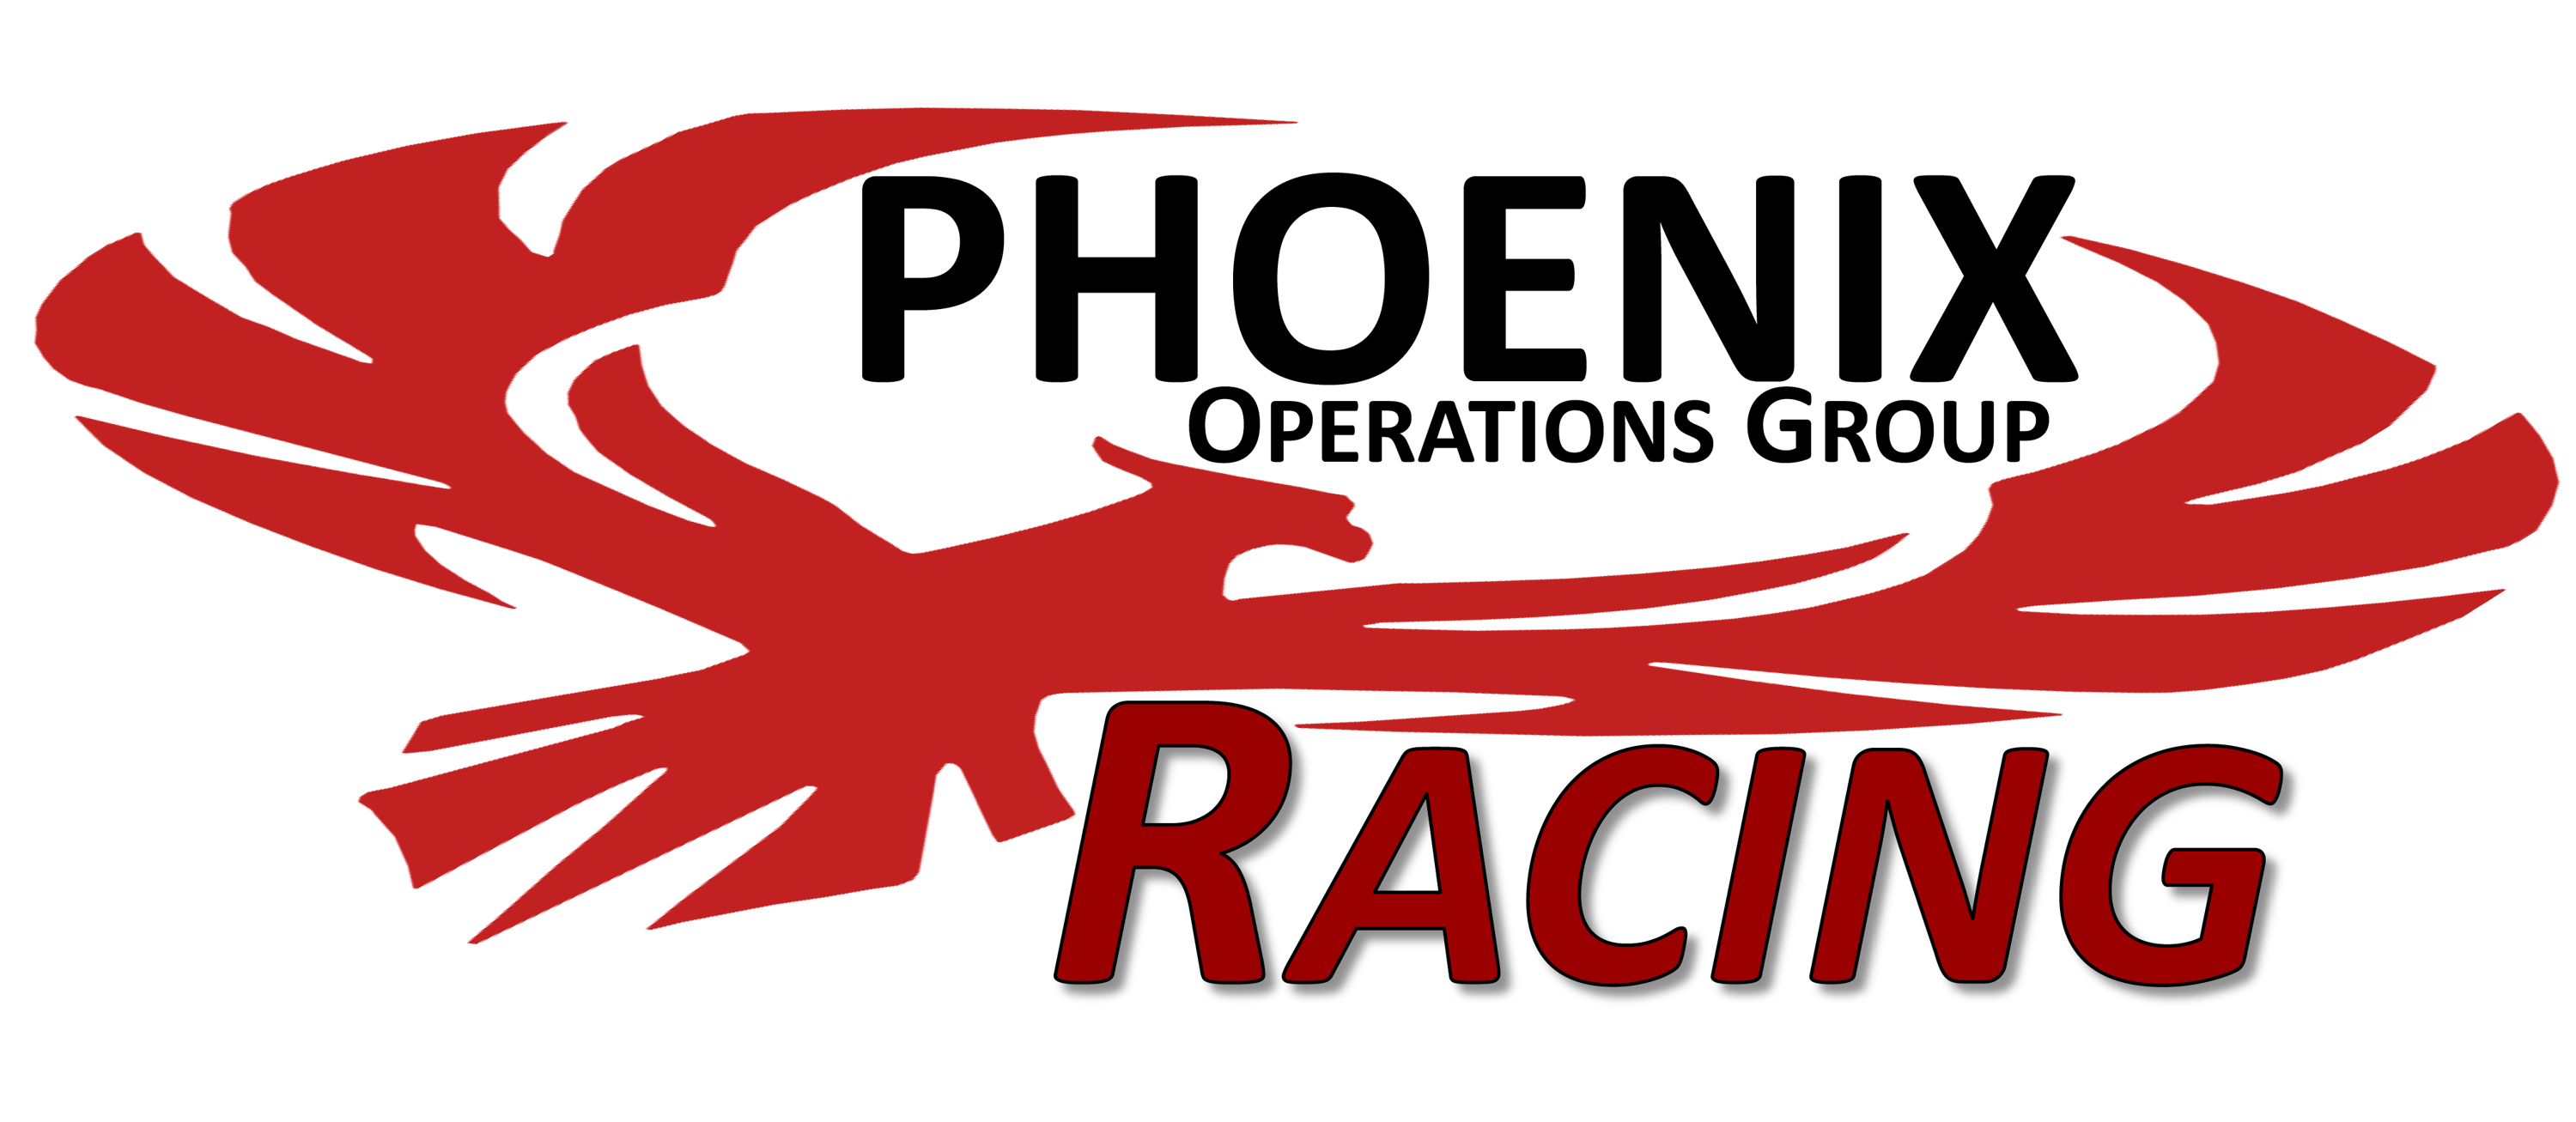 Phoenix Racing Phoenix Racing Llc